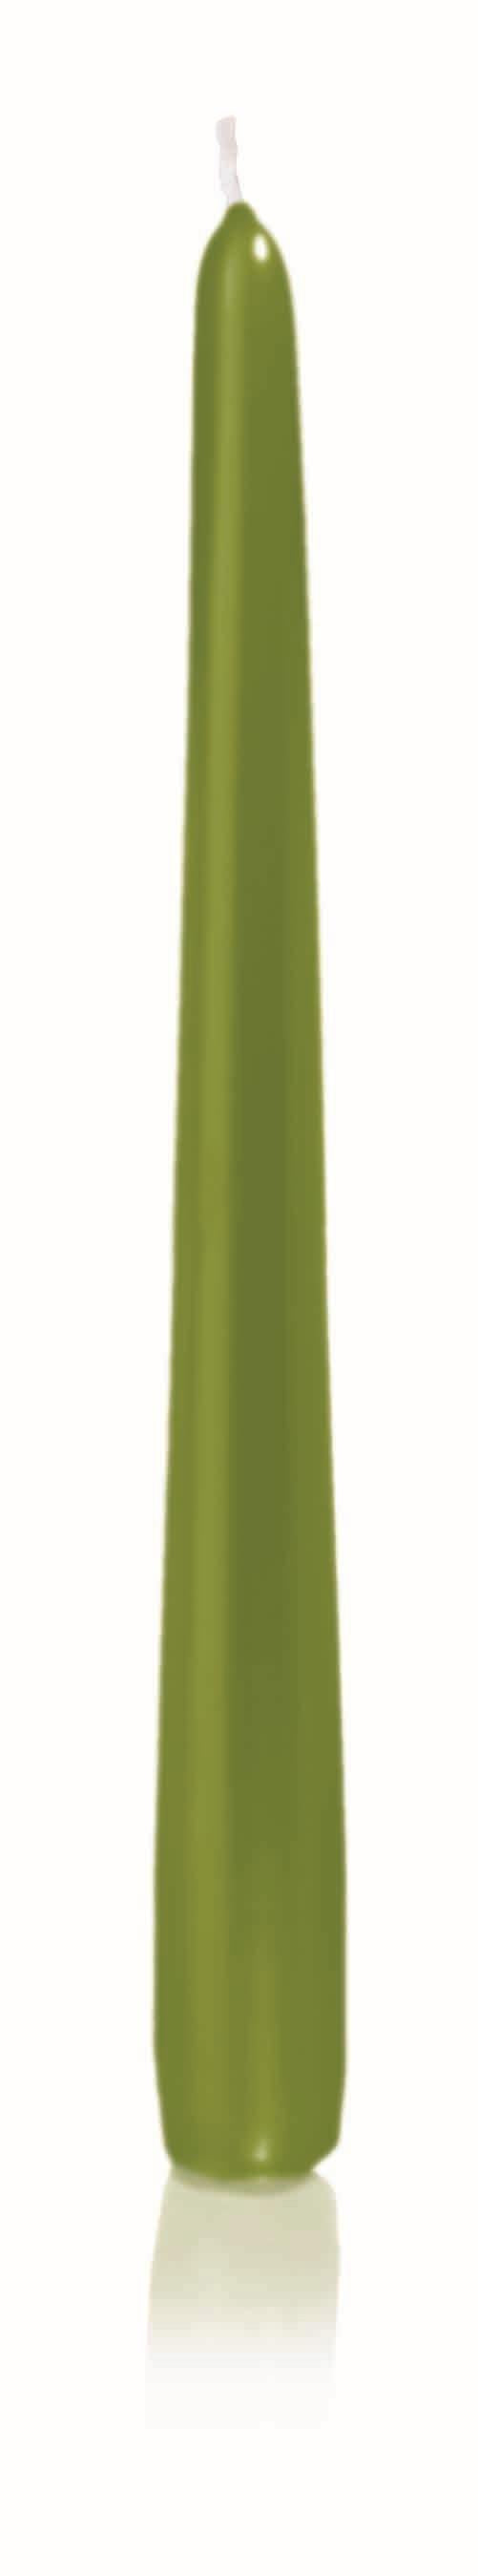 12x Konische Kerzen 250/25mm (Grün)